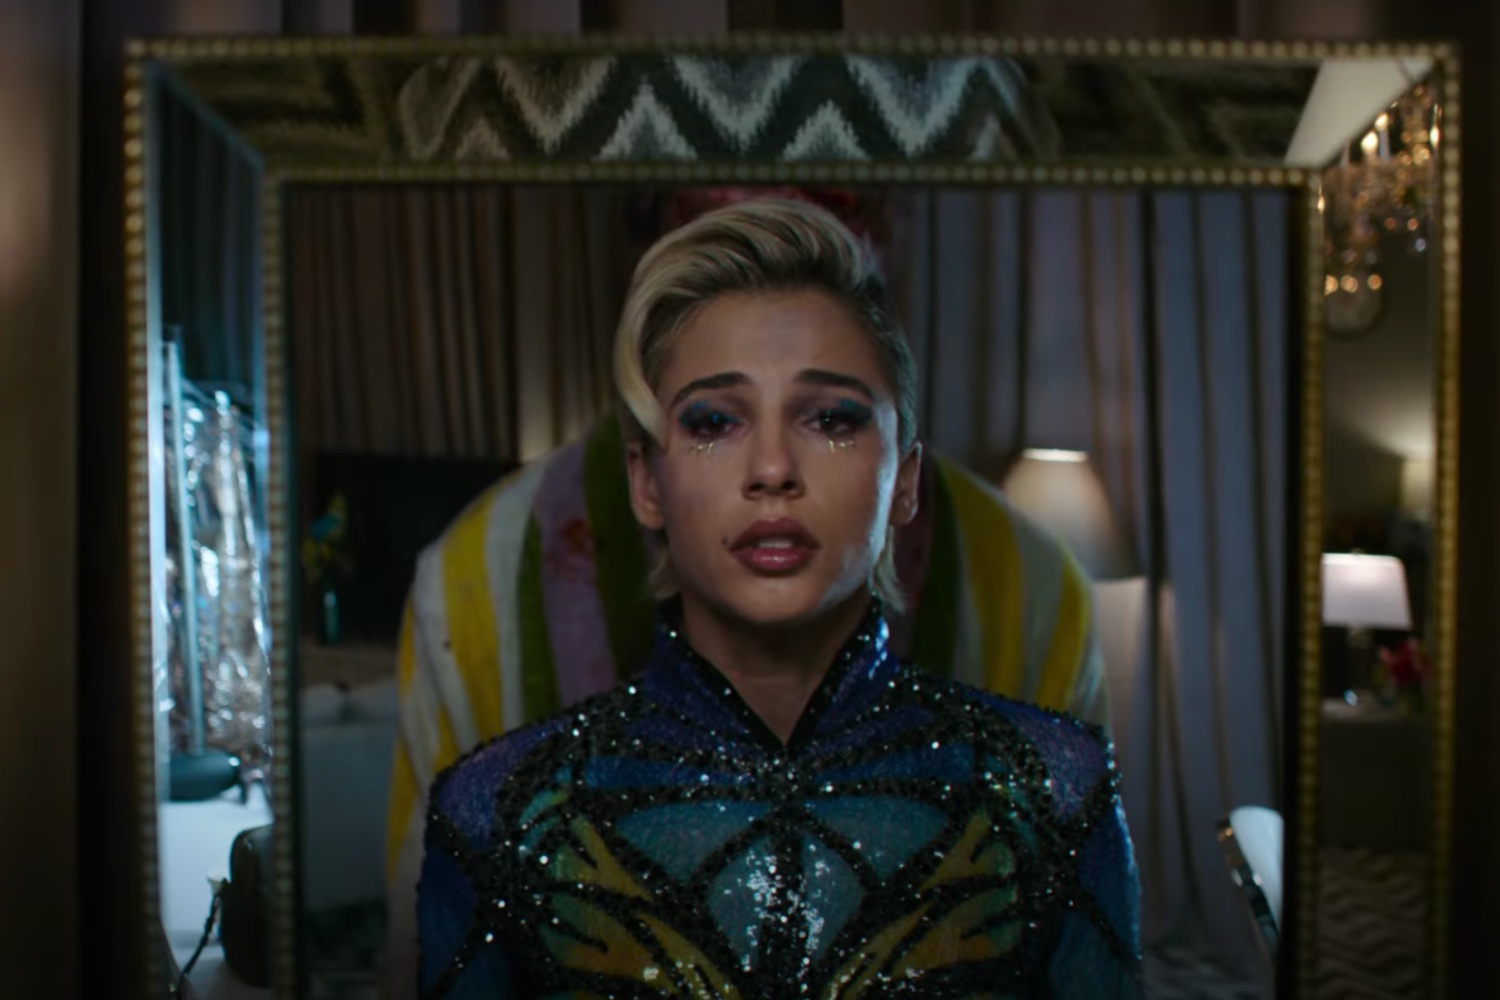 Una estrella del pop se ve triste mientras se mira en un espejo con alguien parado detrás de ella.